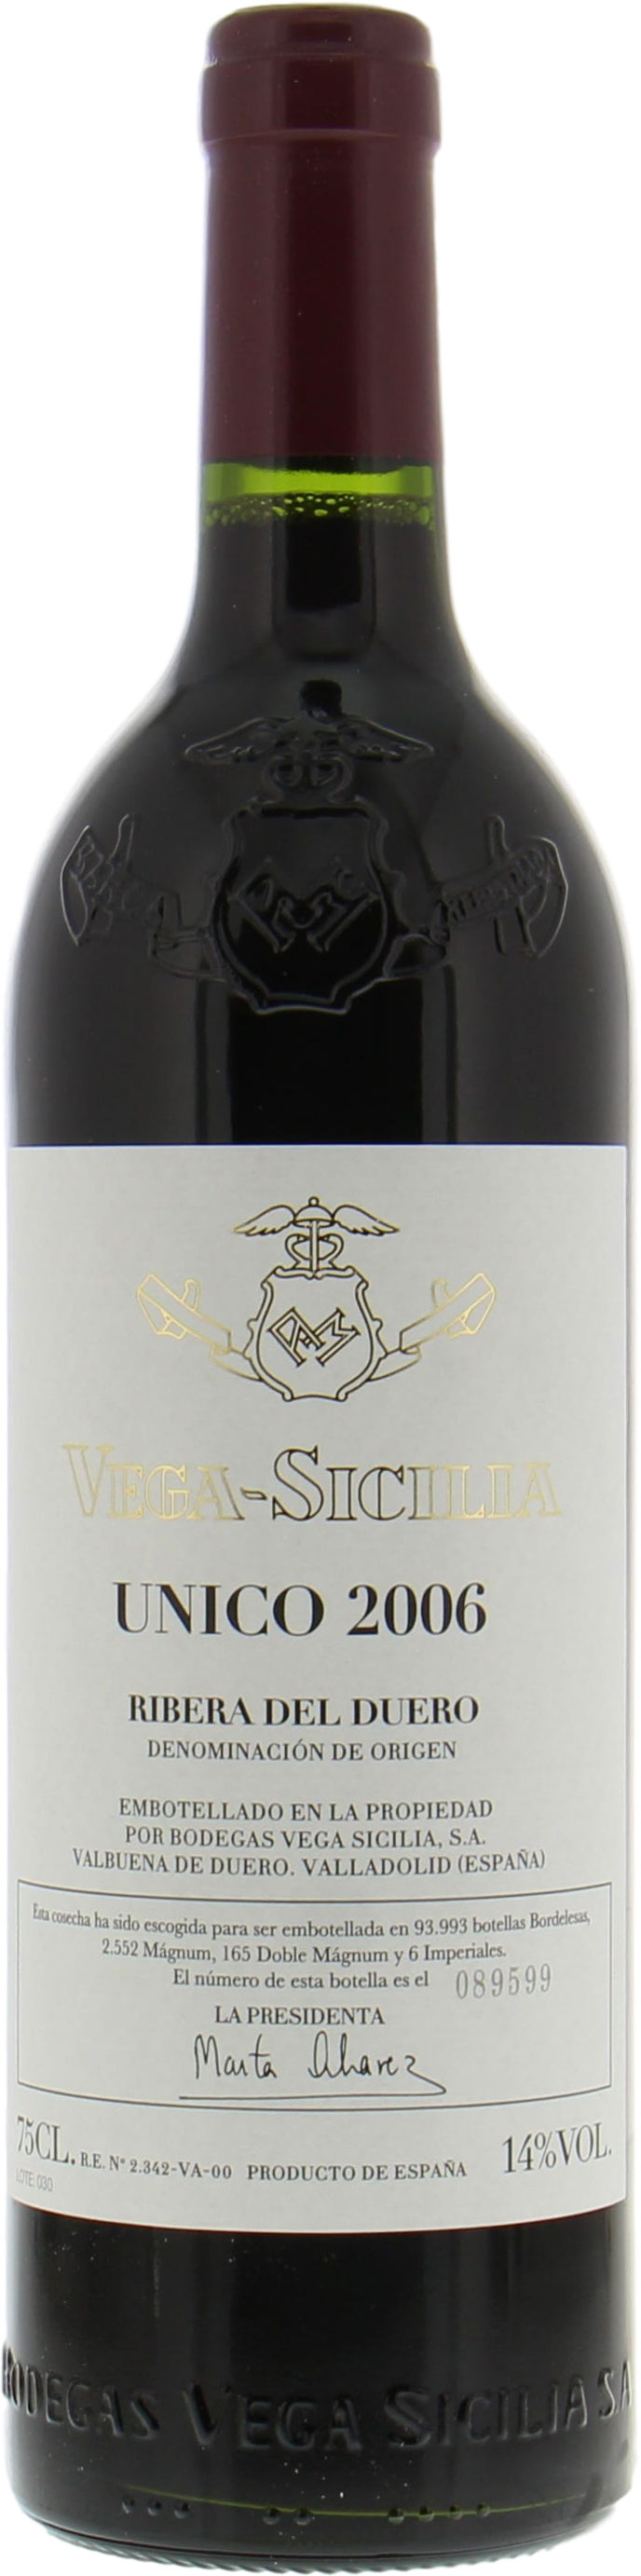 Vega Sicilia - Unico 2006